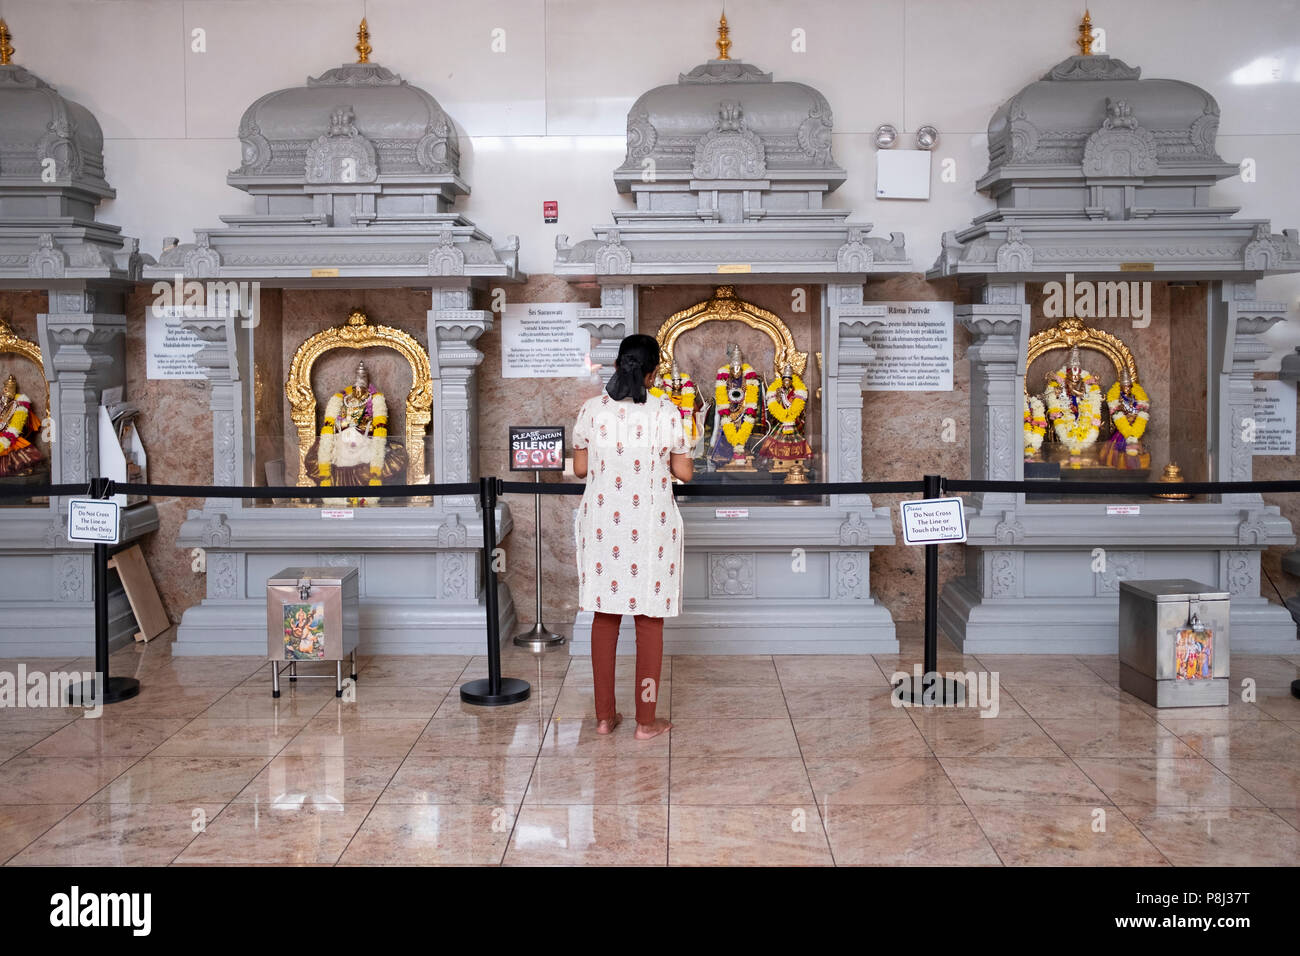 Eine Frau betend und meditierend vor Statuen der Götter und Göttinnen im hinduistischen Tempel Gesellschaft in Flushing, Queens, New York City. Stockfoto